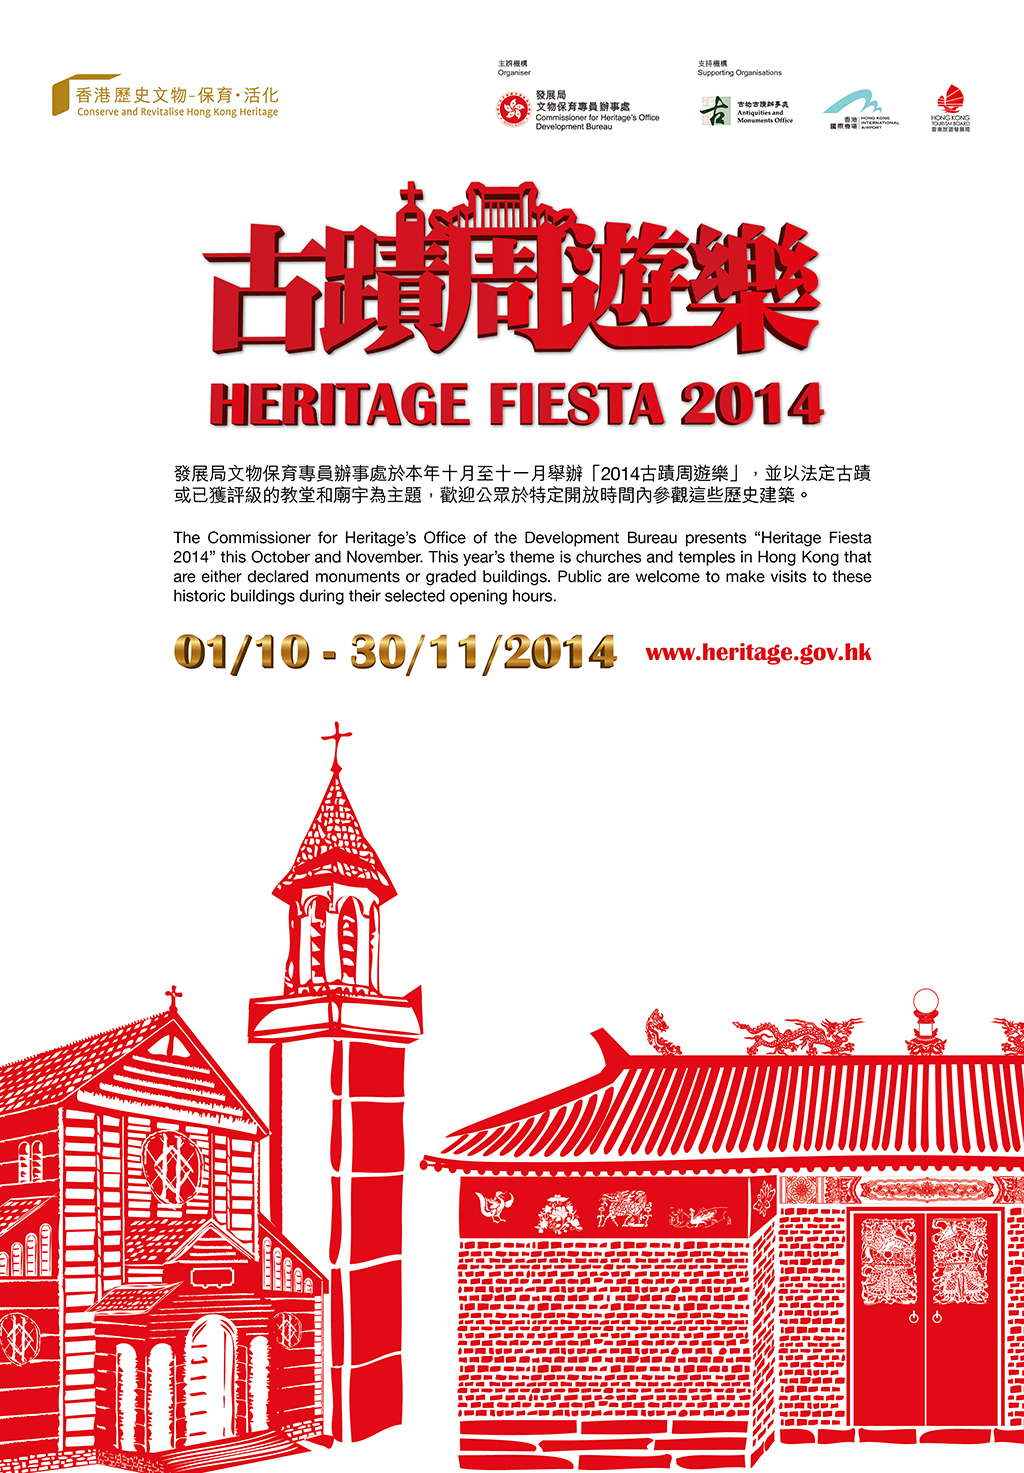 Heritage Fiesta 2014 In October